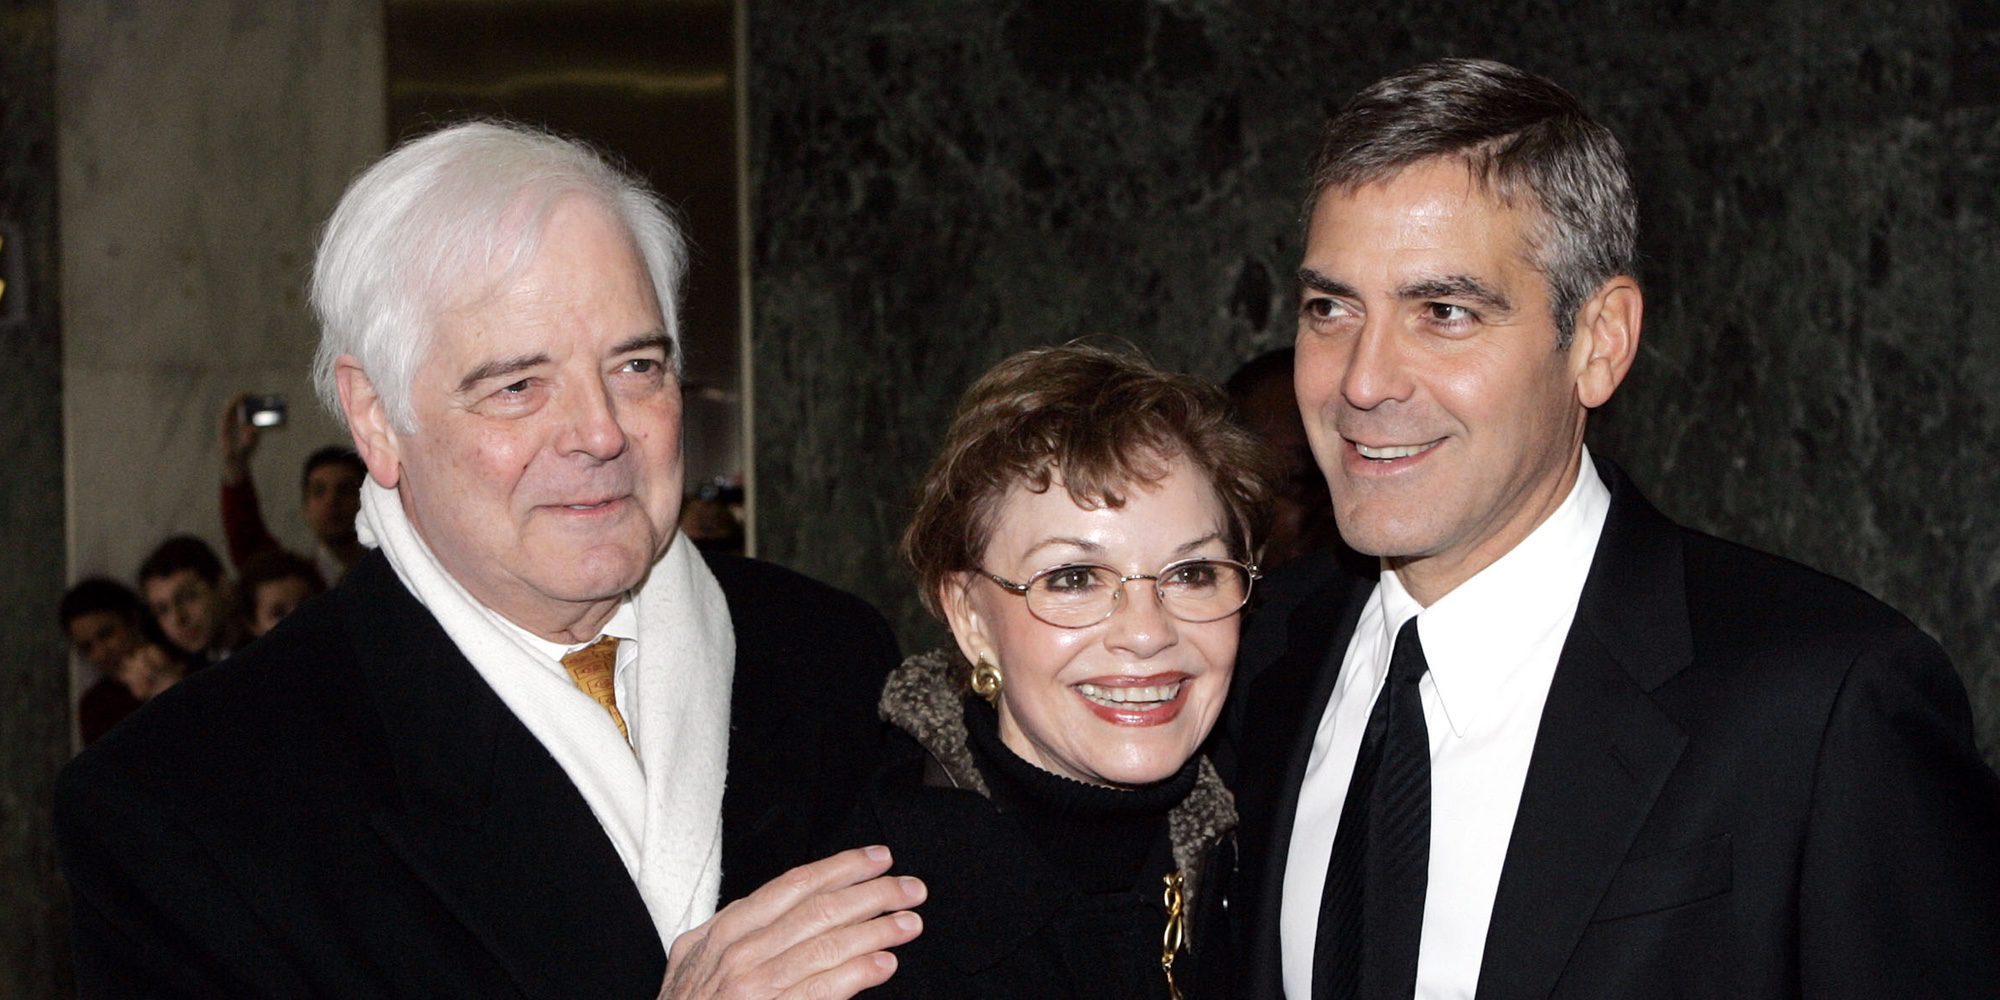 El padre de George Clooney, Nick Clooney, revela cómo son sus nietos Alexander y Ella